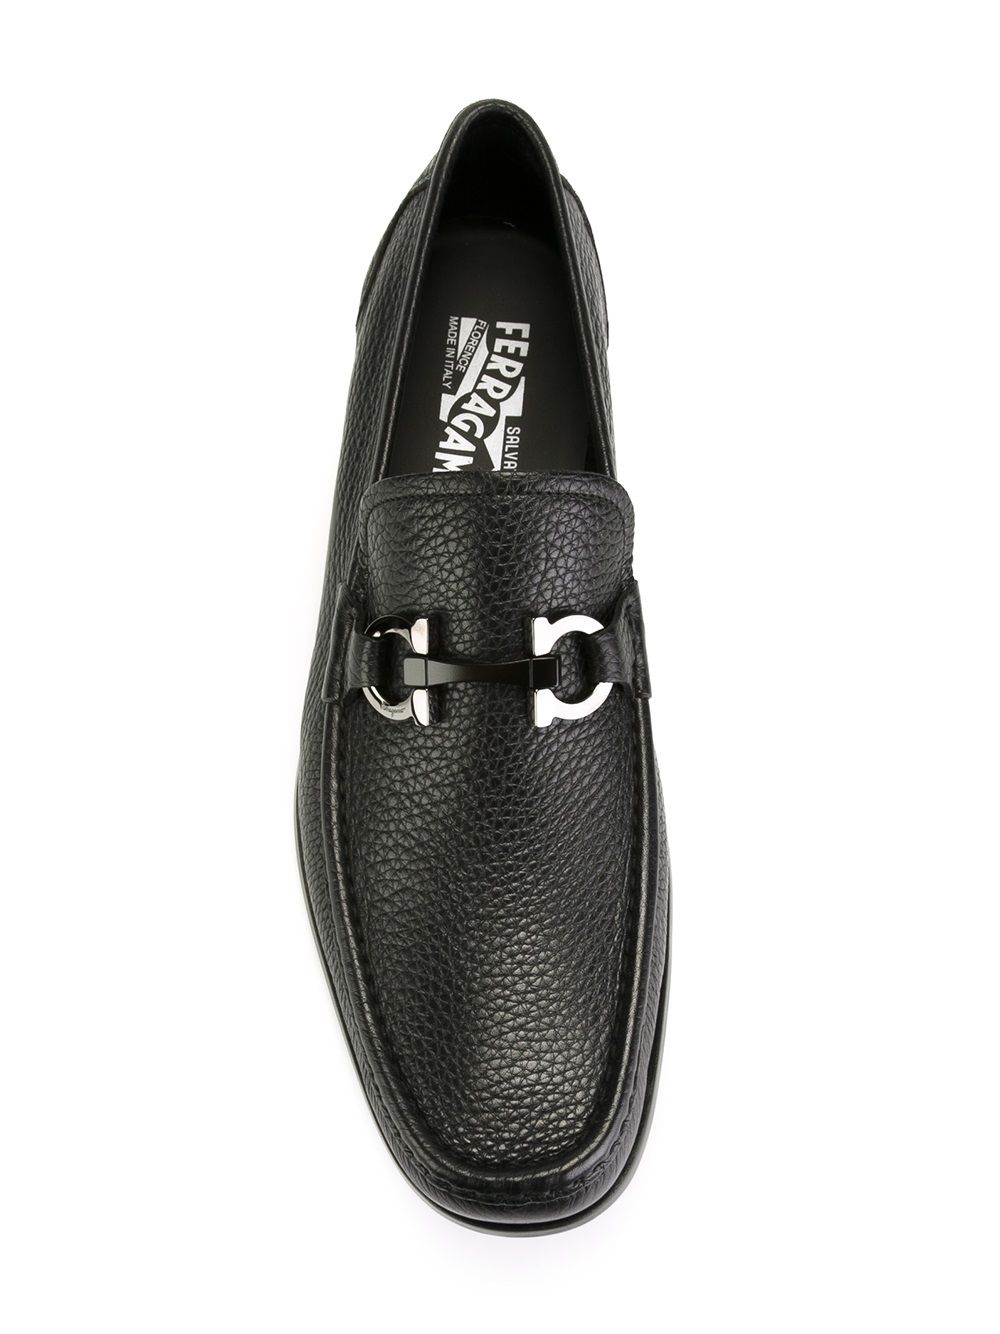 Salvatore Ferragamo Gancini buckle loafers $455 - Buy SS19 Online ...